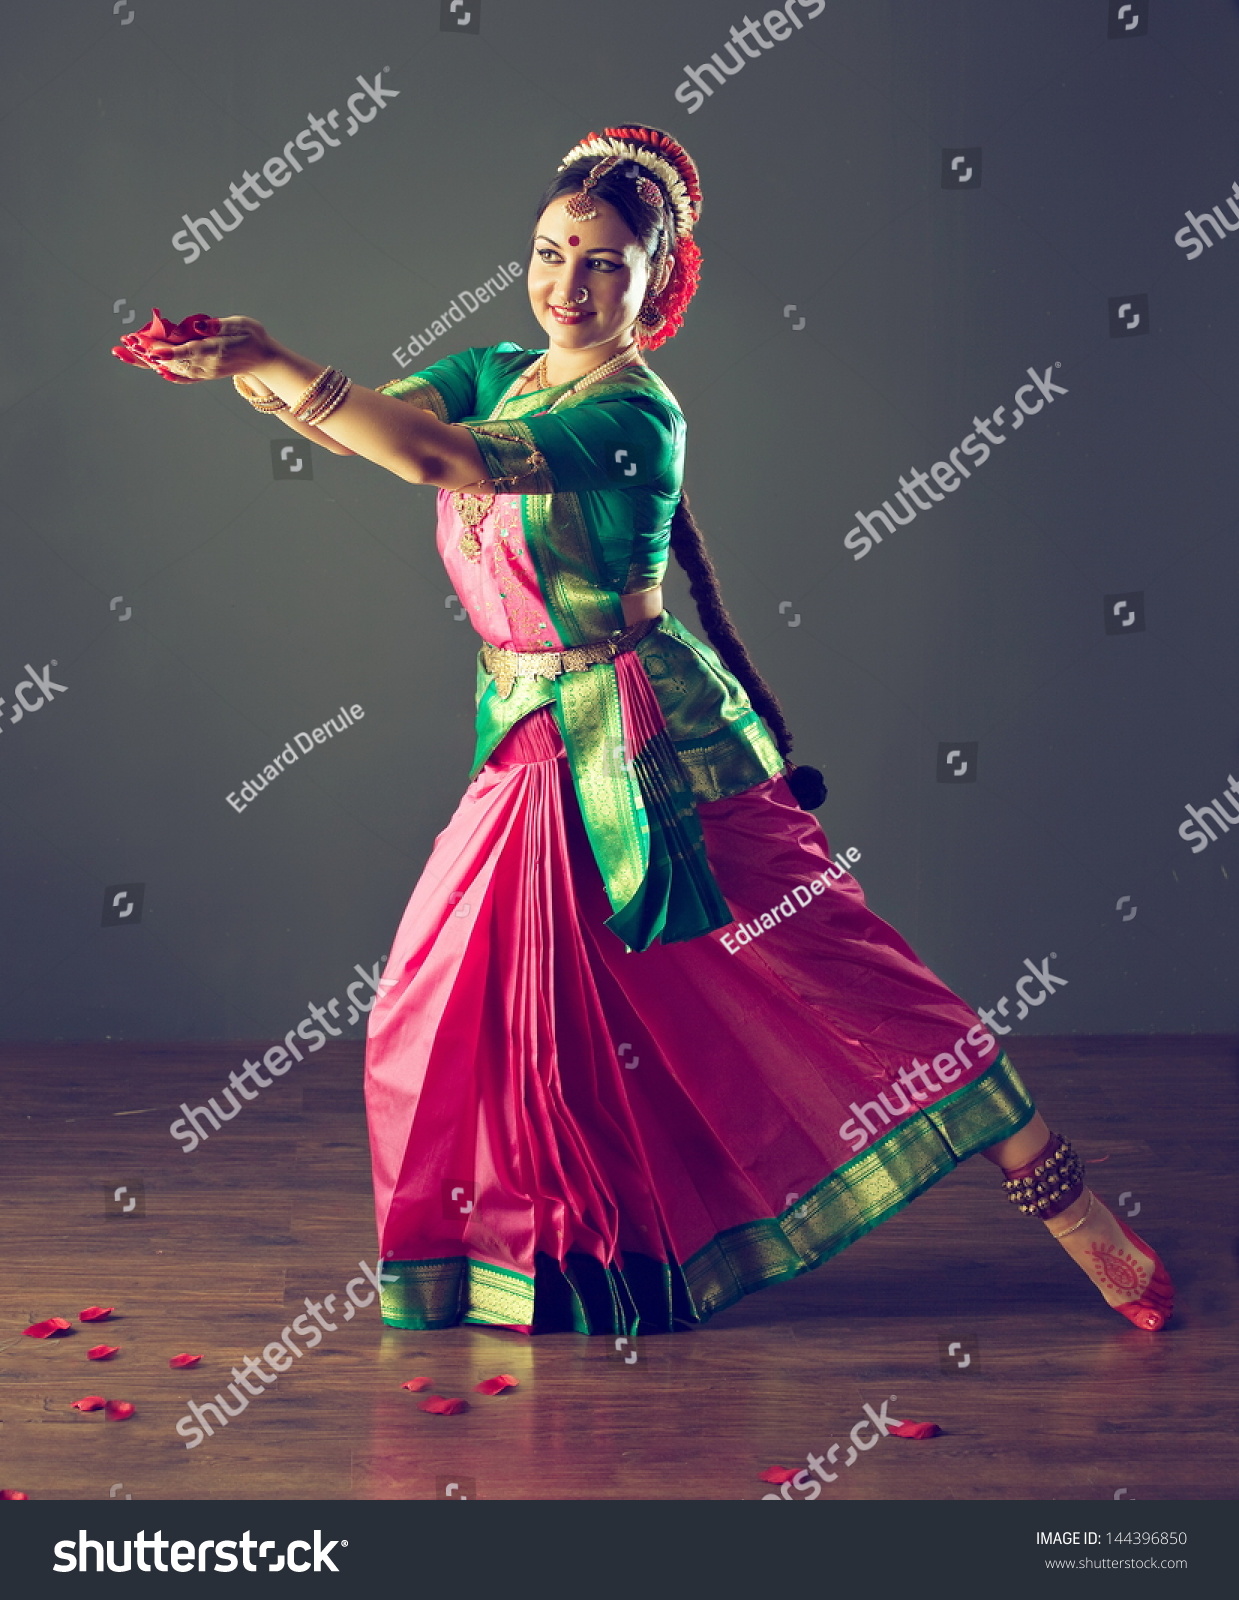 印度古典舞蹈-艺术,人物-海洛创意(HelloRF)-Sh